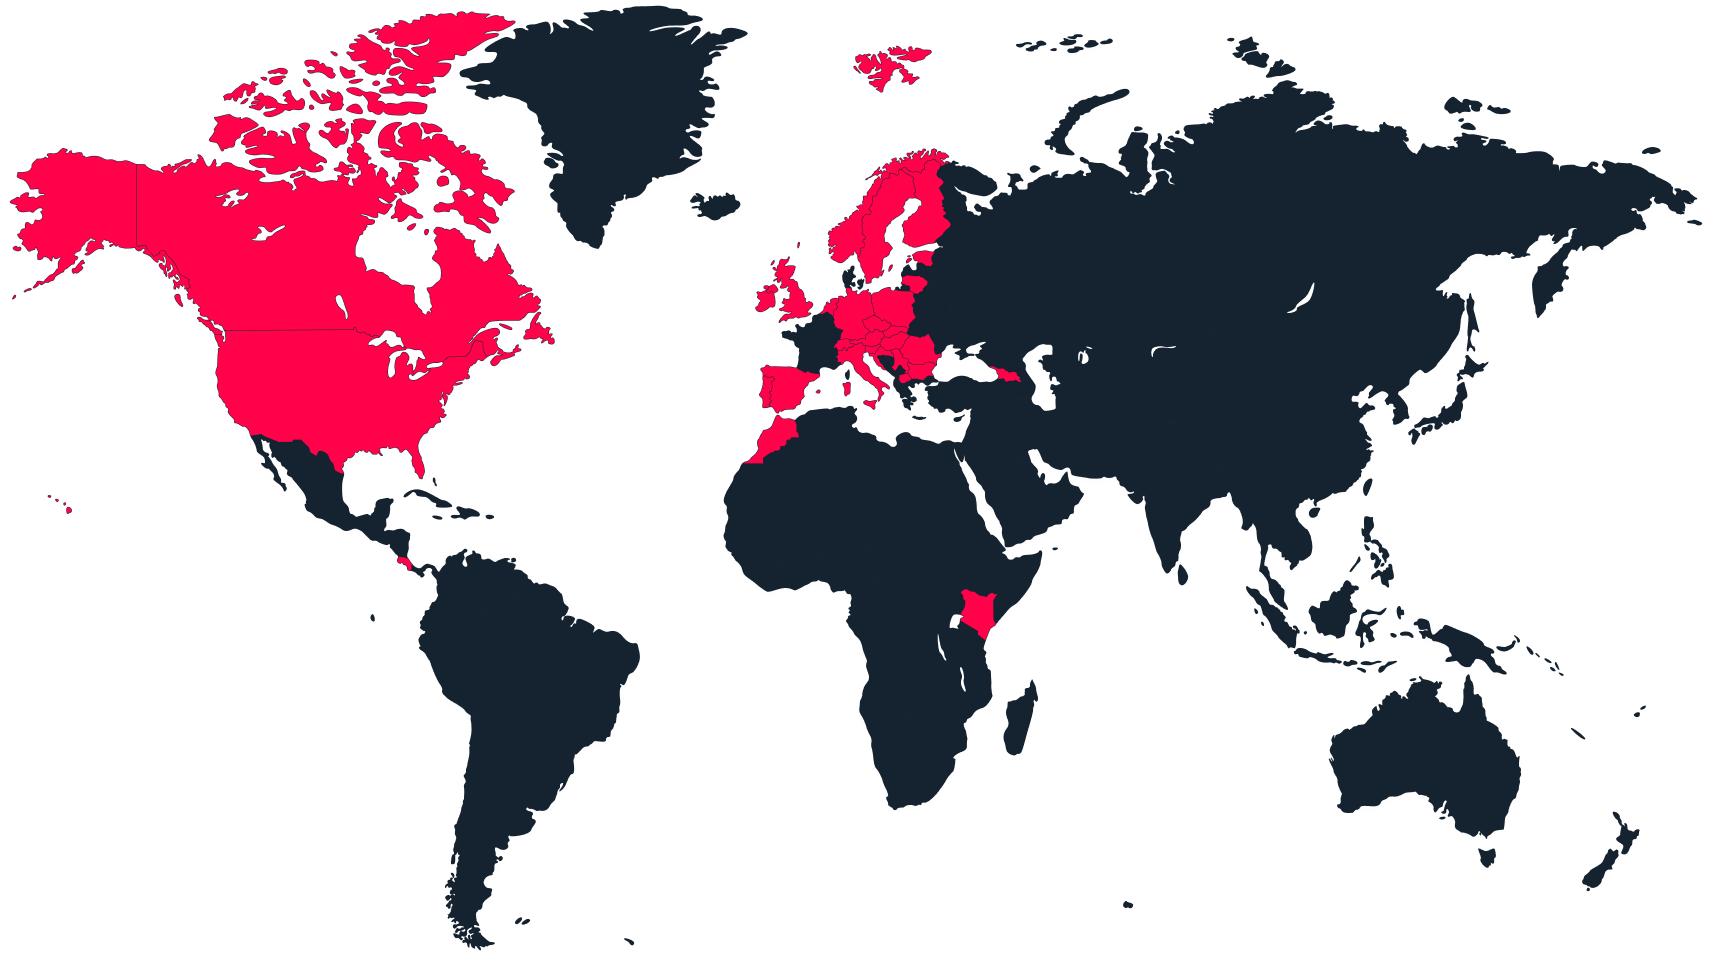 Un mapa del mundo con los países activos marcados en rojo